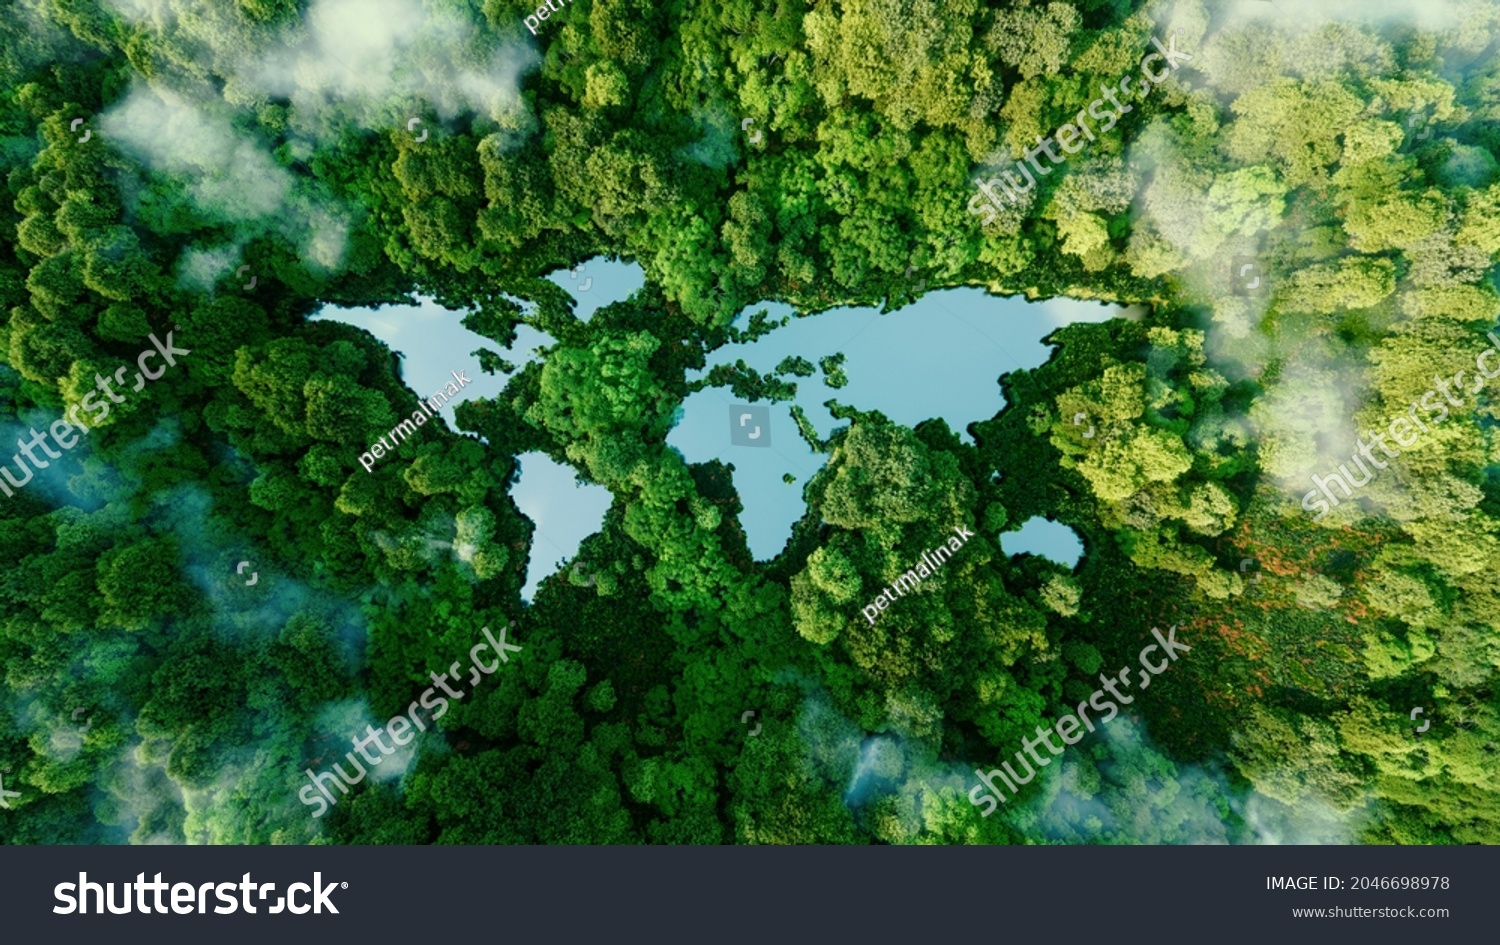 Ein See in der Form der Kontinente der Welt inmitten unberührter Natur. Eine Metapher für ökologische Reisen, Naturschutz, Klimawandel, Erderwärmung und die Fragilität der Natur.3d-Darstellung – Stockillustration